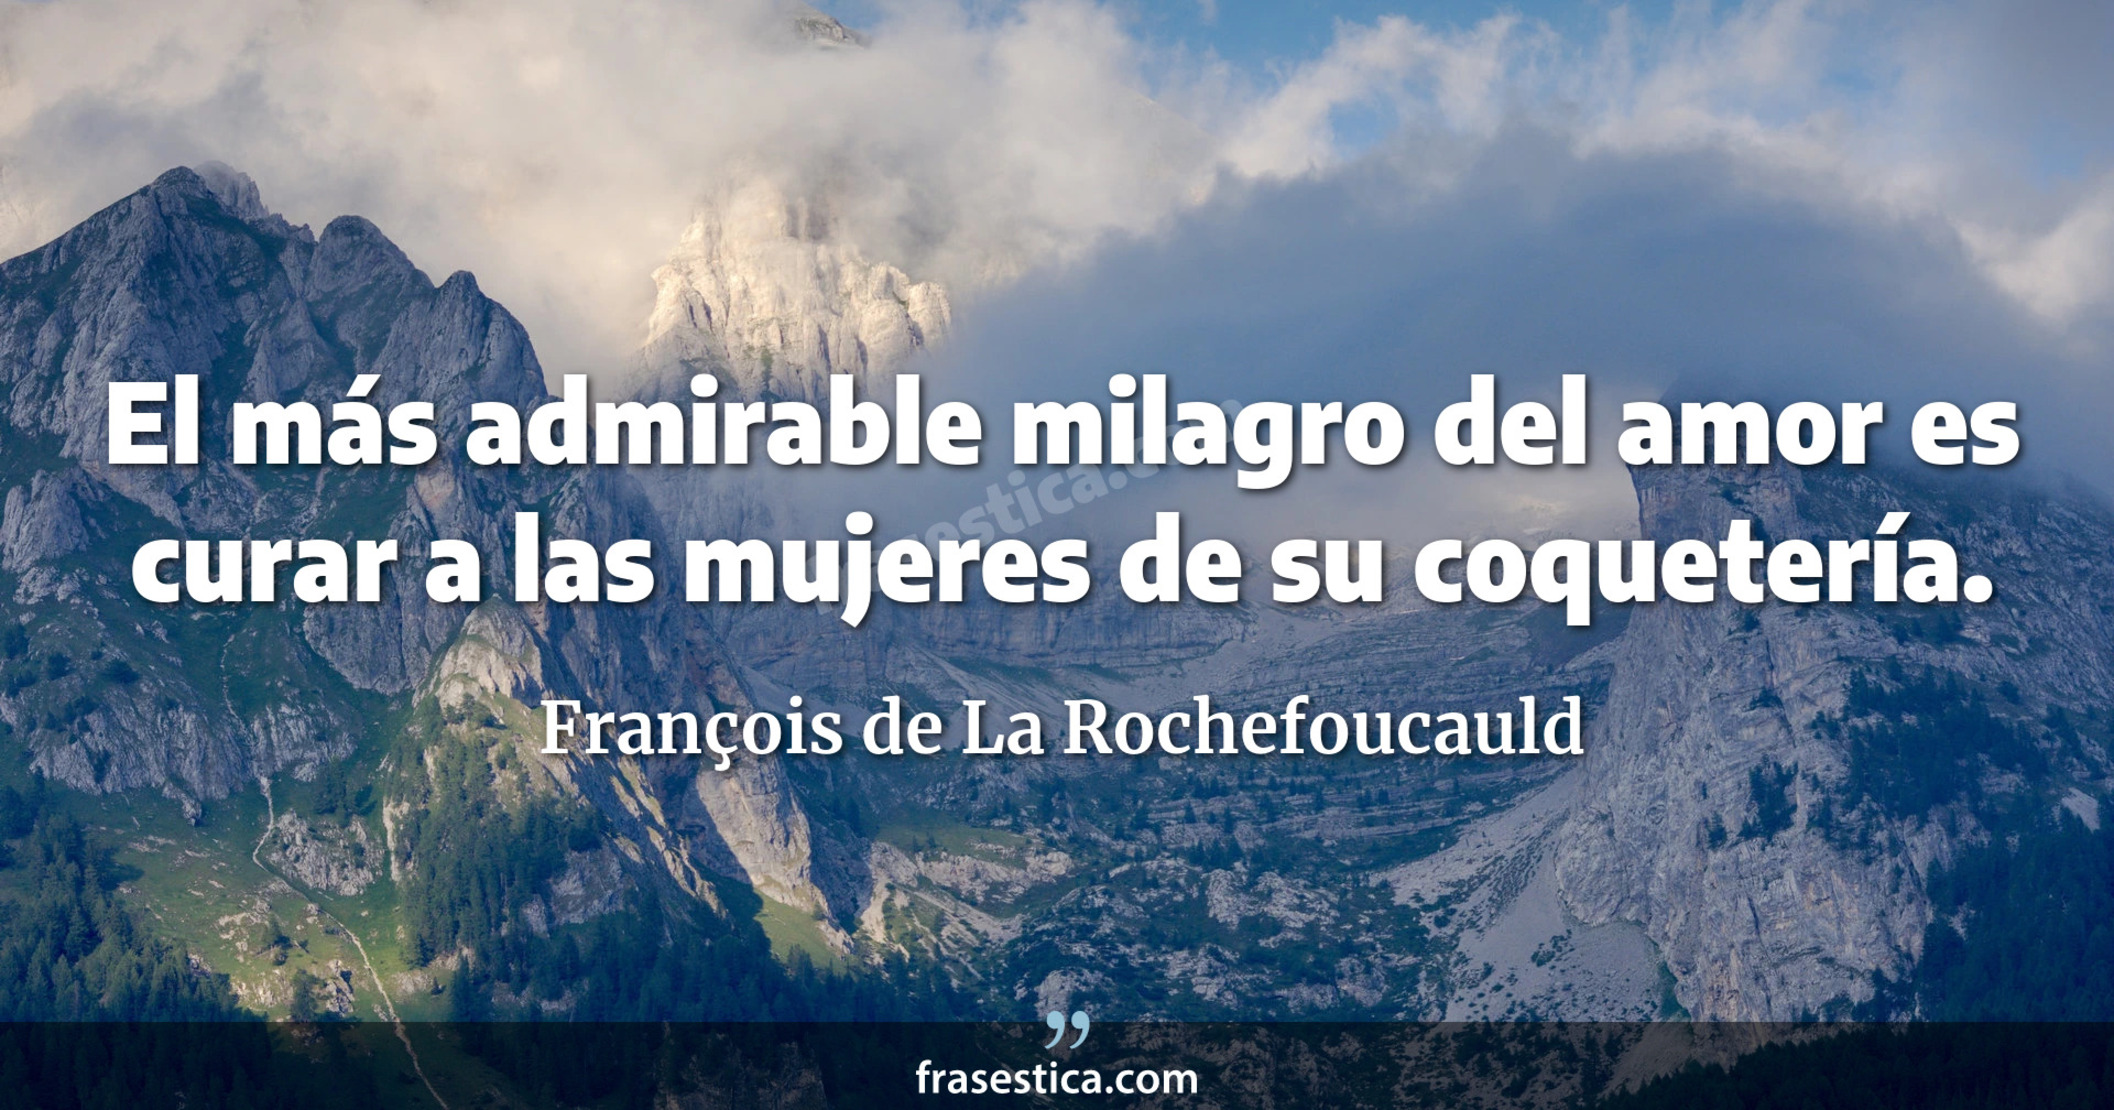 El más admirable milagro del amor es curar a las mujeres de su coquetería. - François de La Rochefoucauld